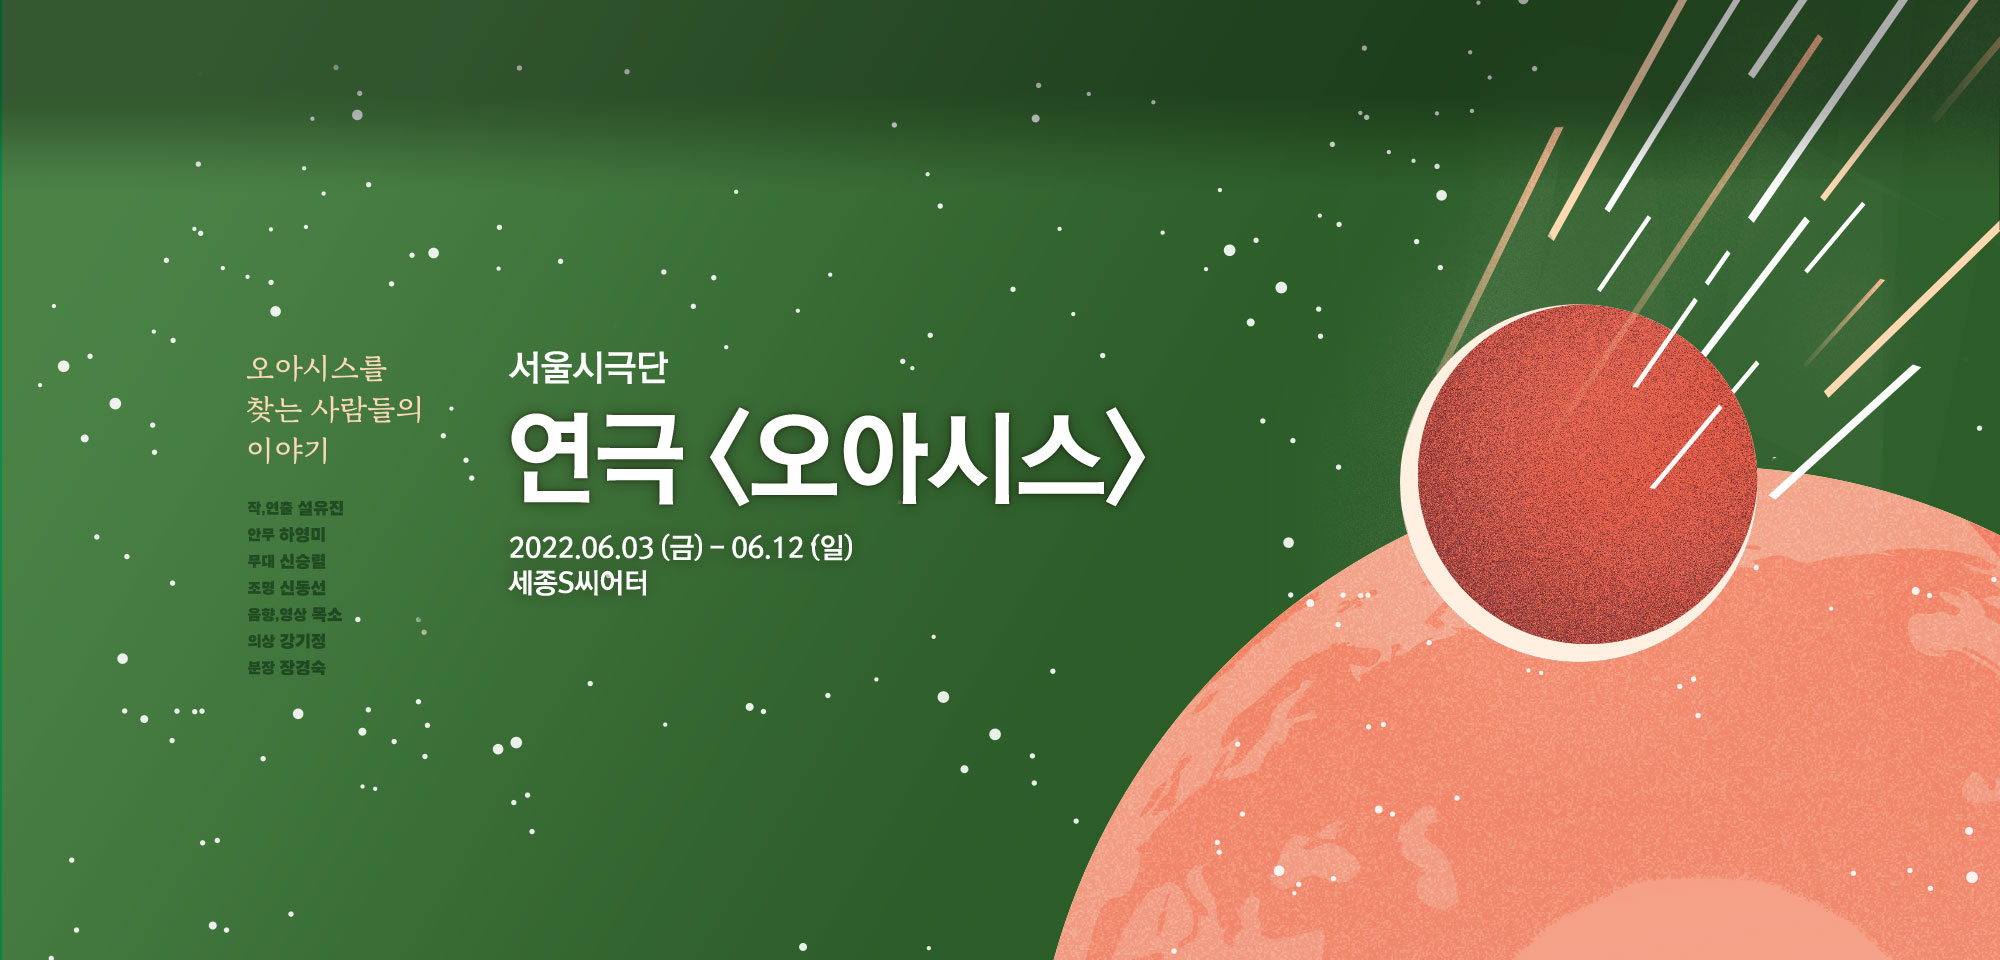 서울시극단 연극<오아시스> 2022.06.03(금)~06.12(일)세종S씨어터